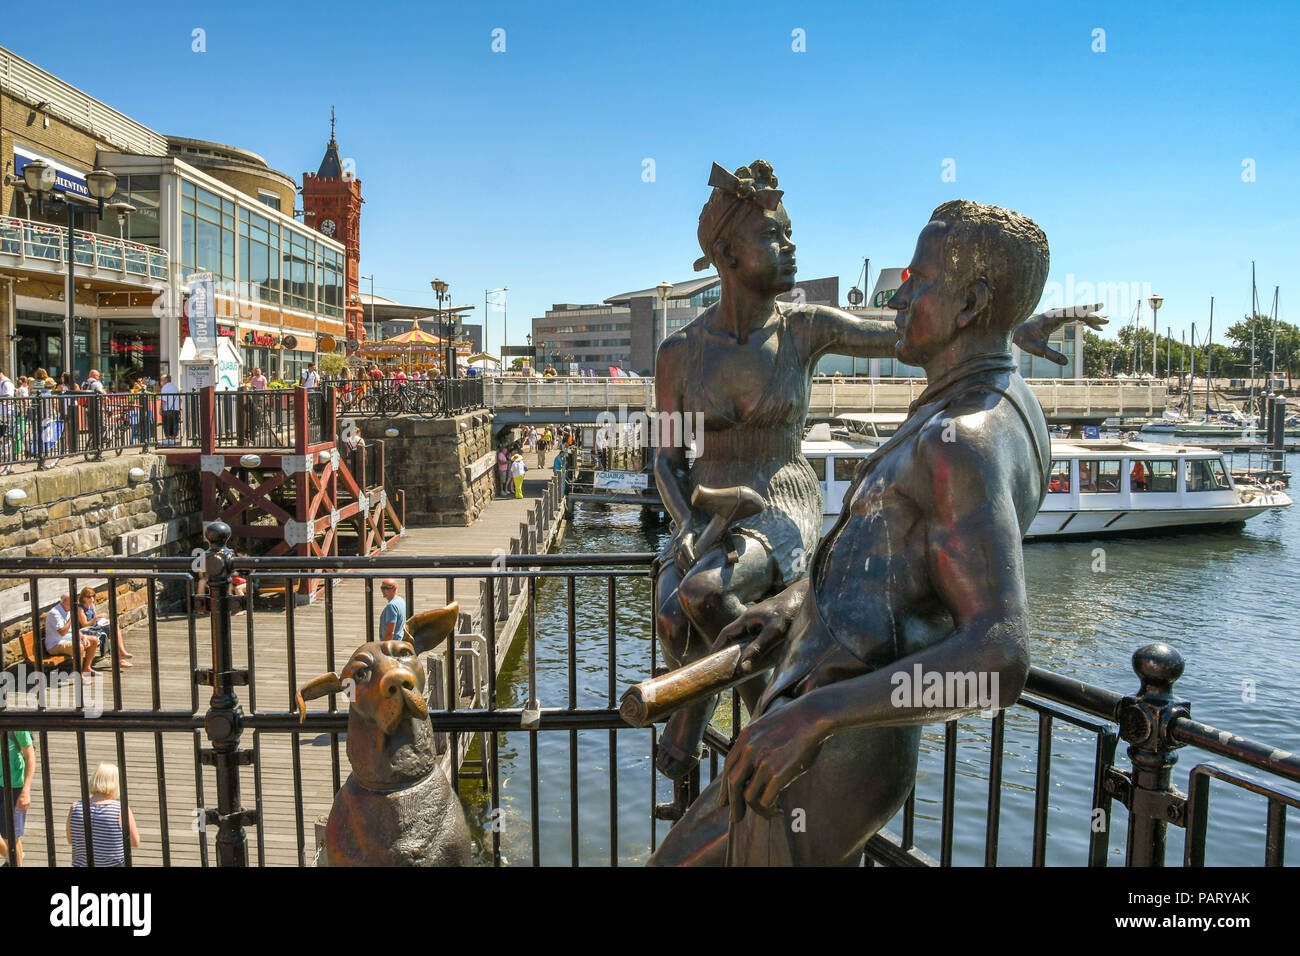 La scultura in bronzo "People Like Us" su Mermaid Quay in Cardiff Bay. Un esempio di arte pubblica, esso comprende due giovani e un cane. Foto Stock